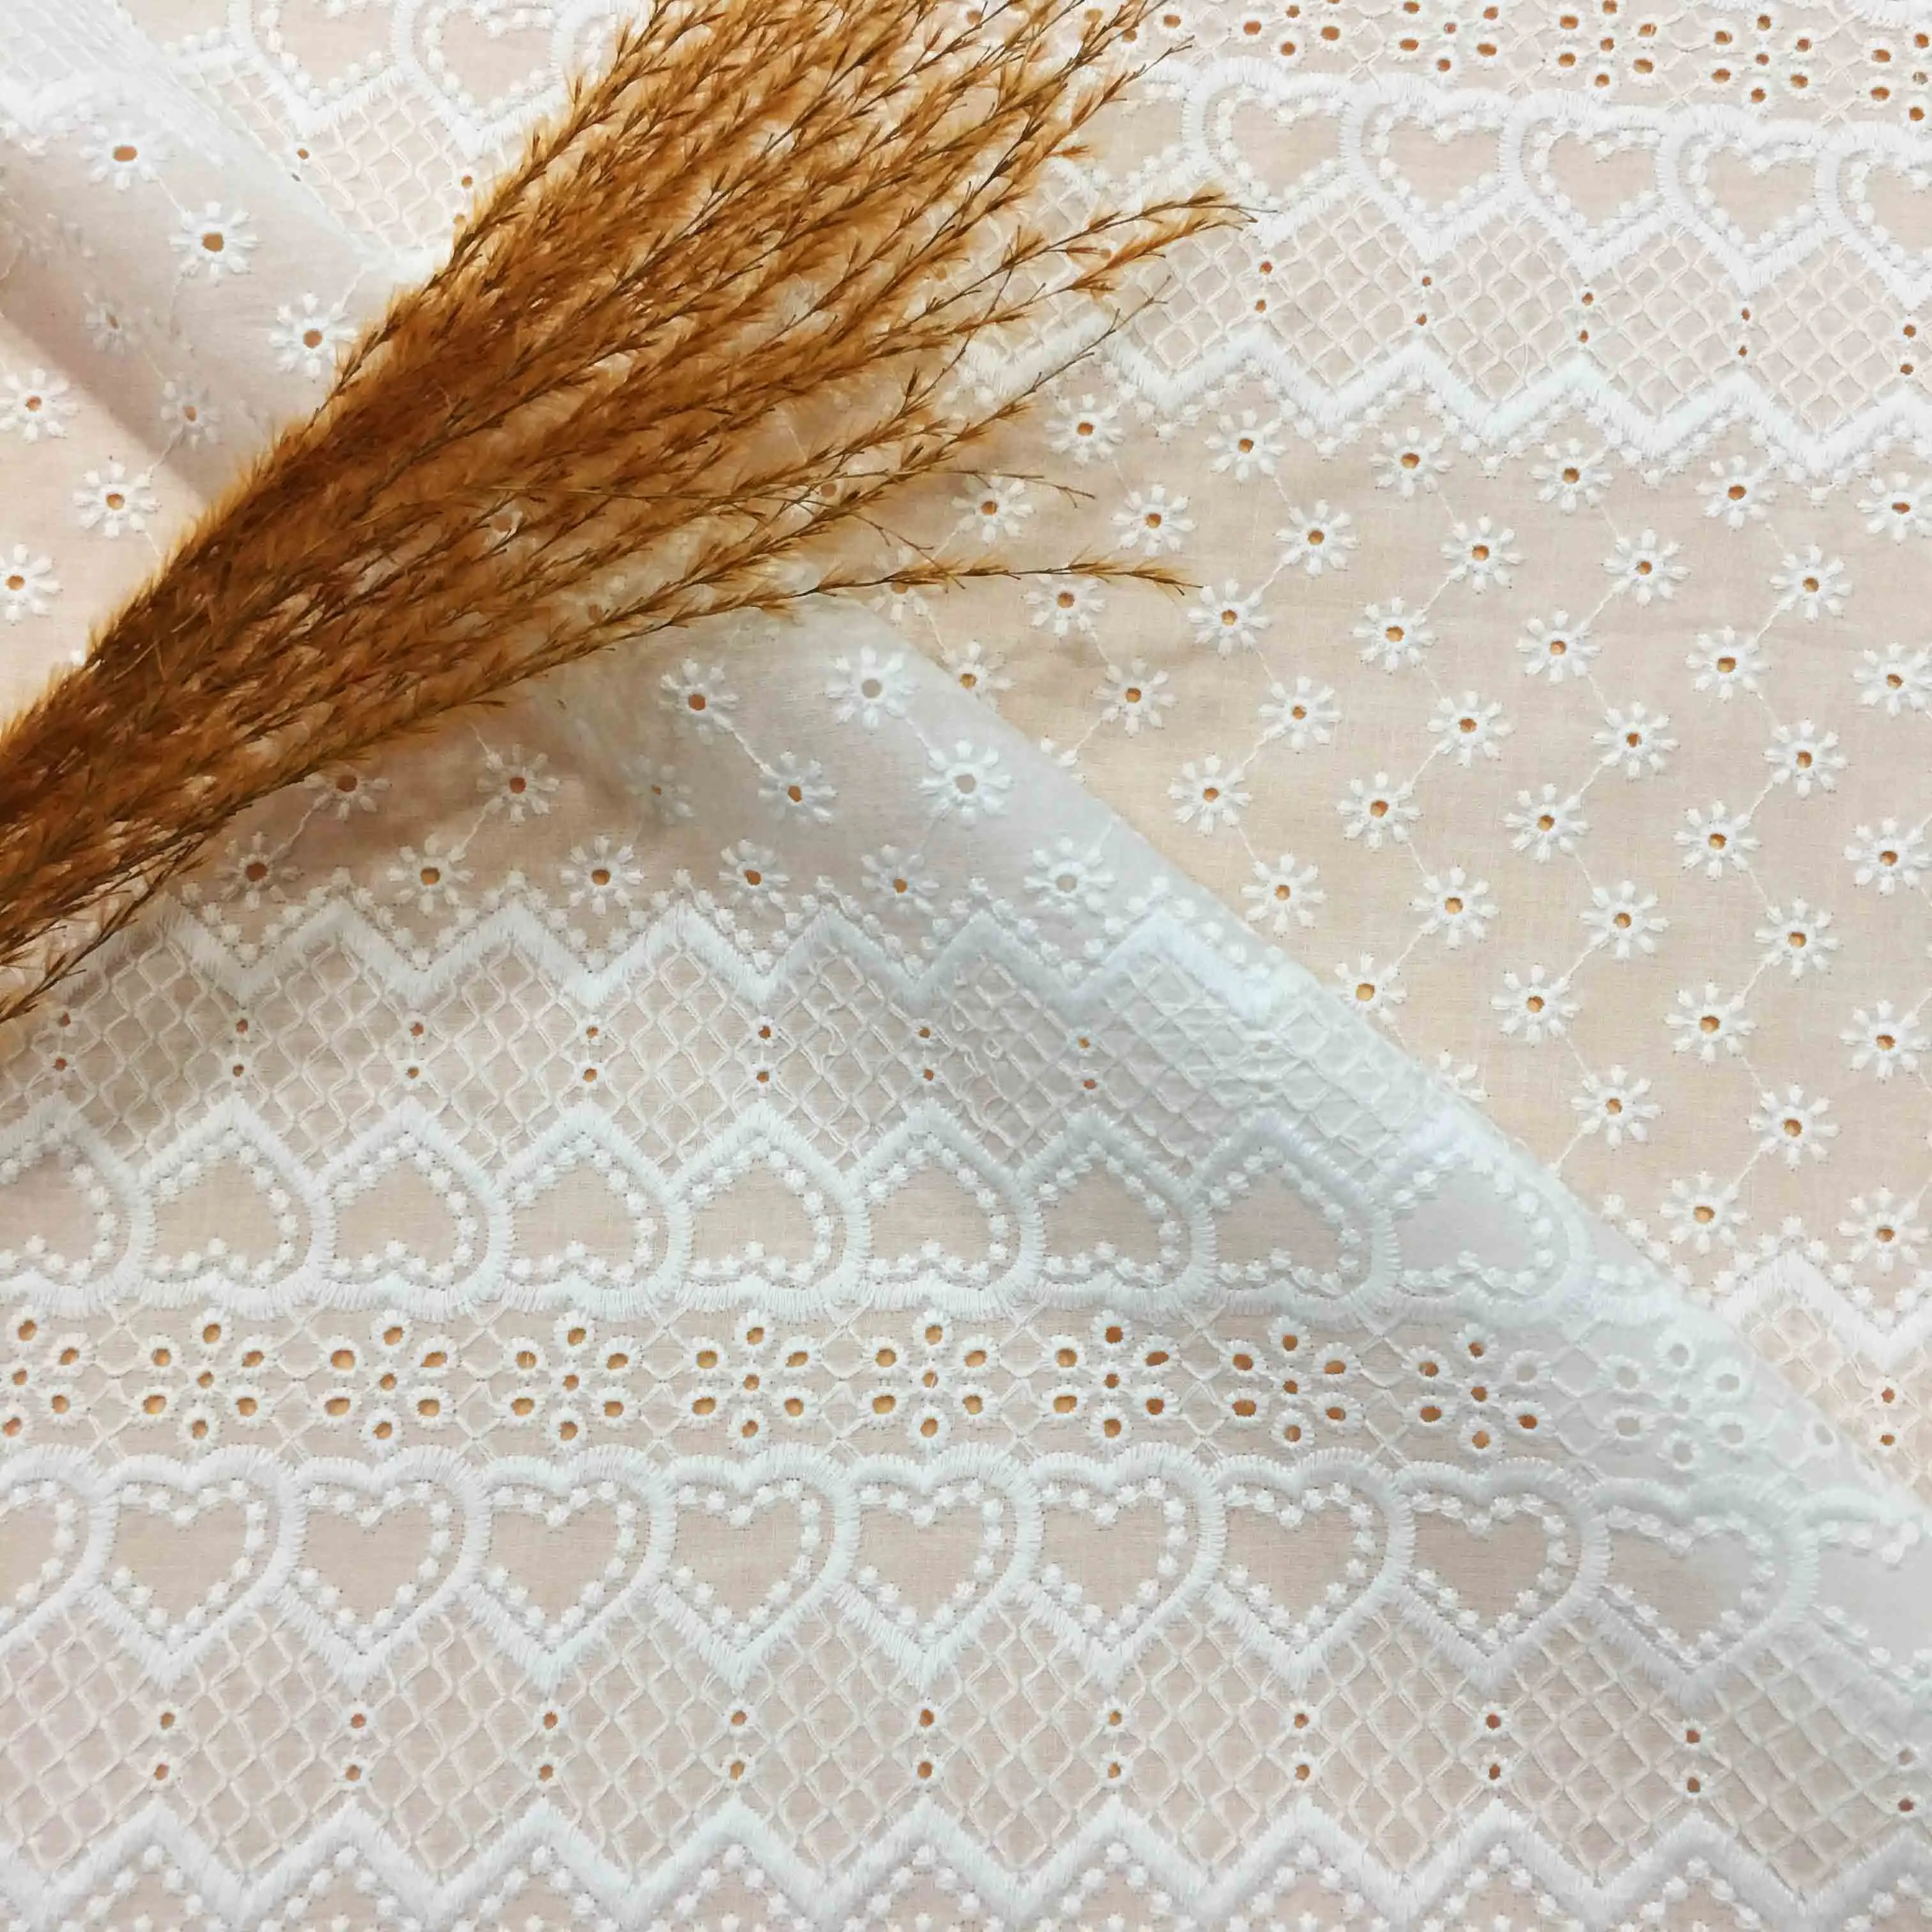 RXF0525 Ткань Текстиль 100% хлопчатобумажная ткань производство Китай